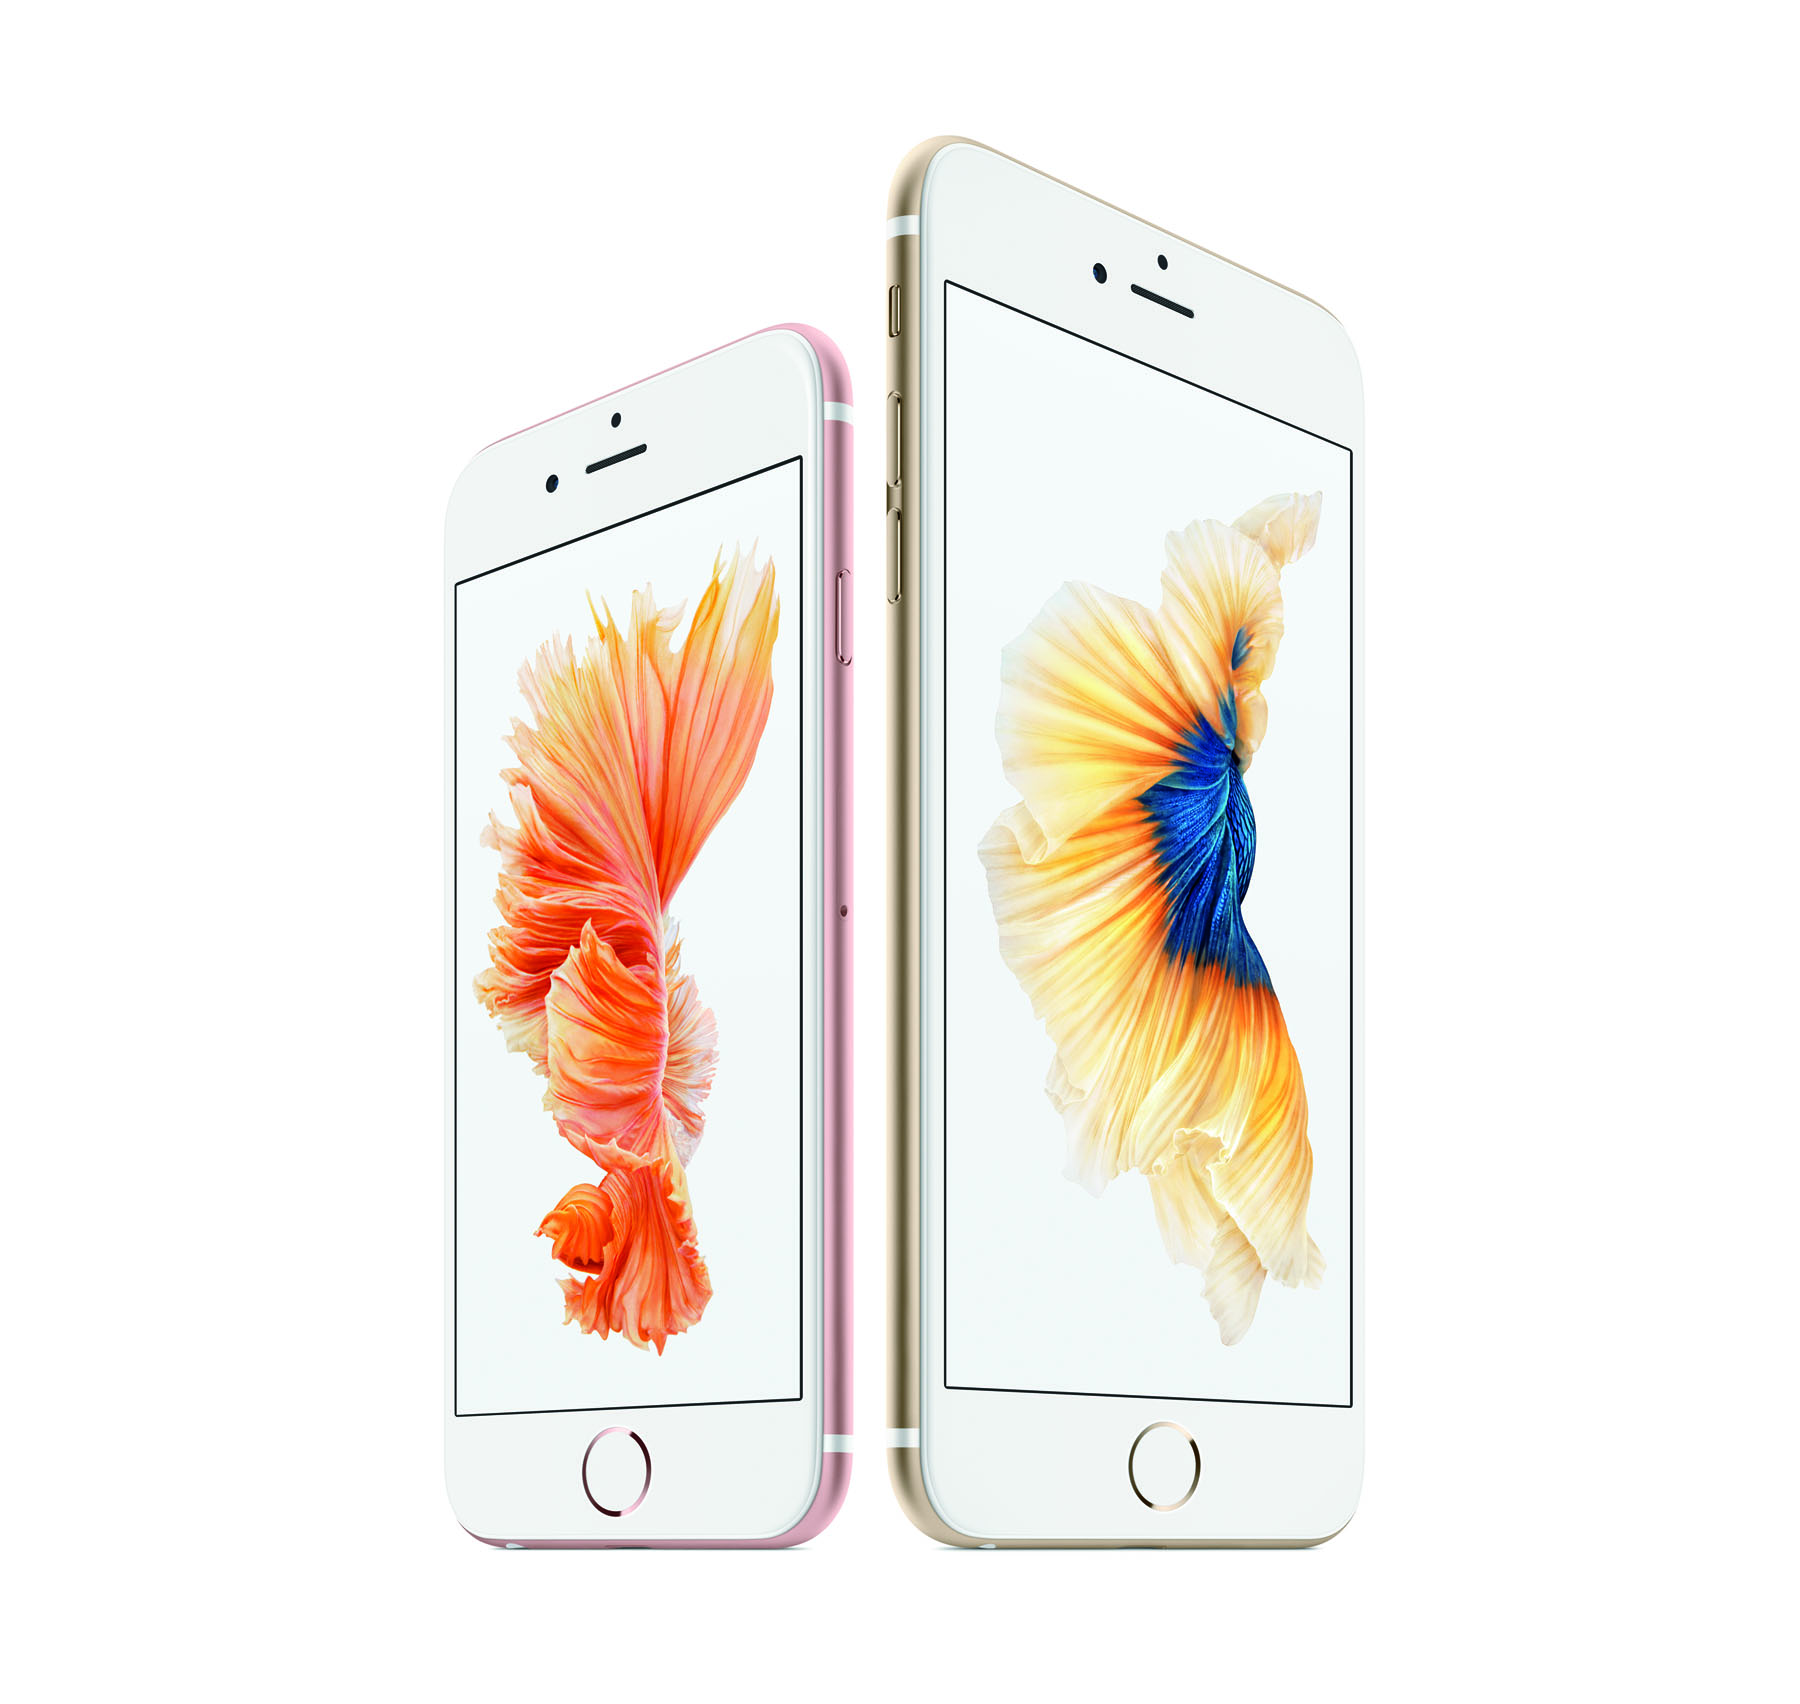 Apple iPhone 6s & iPhone 6s Plus